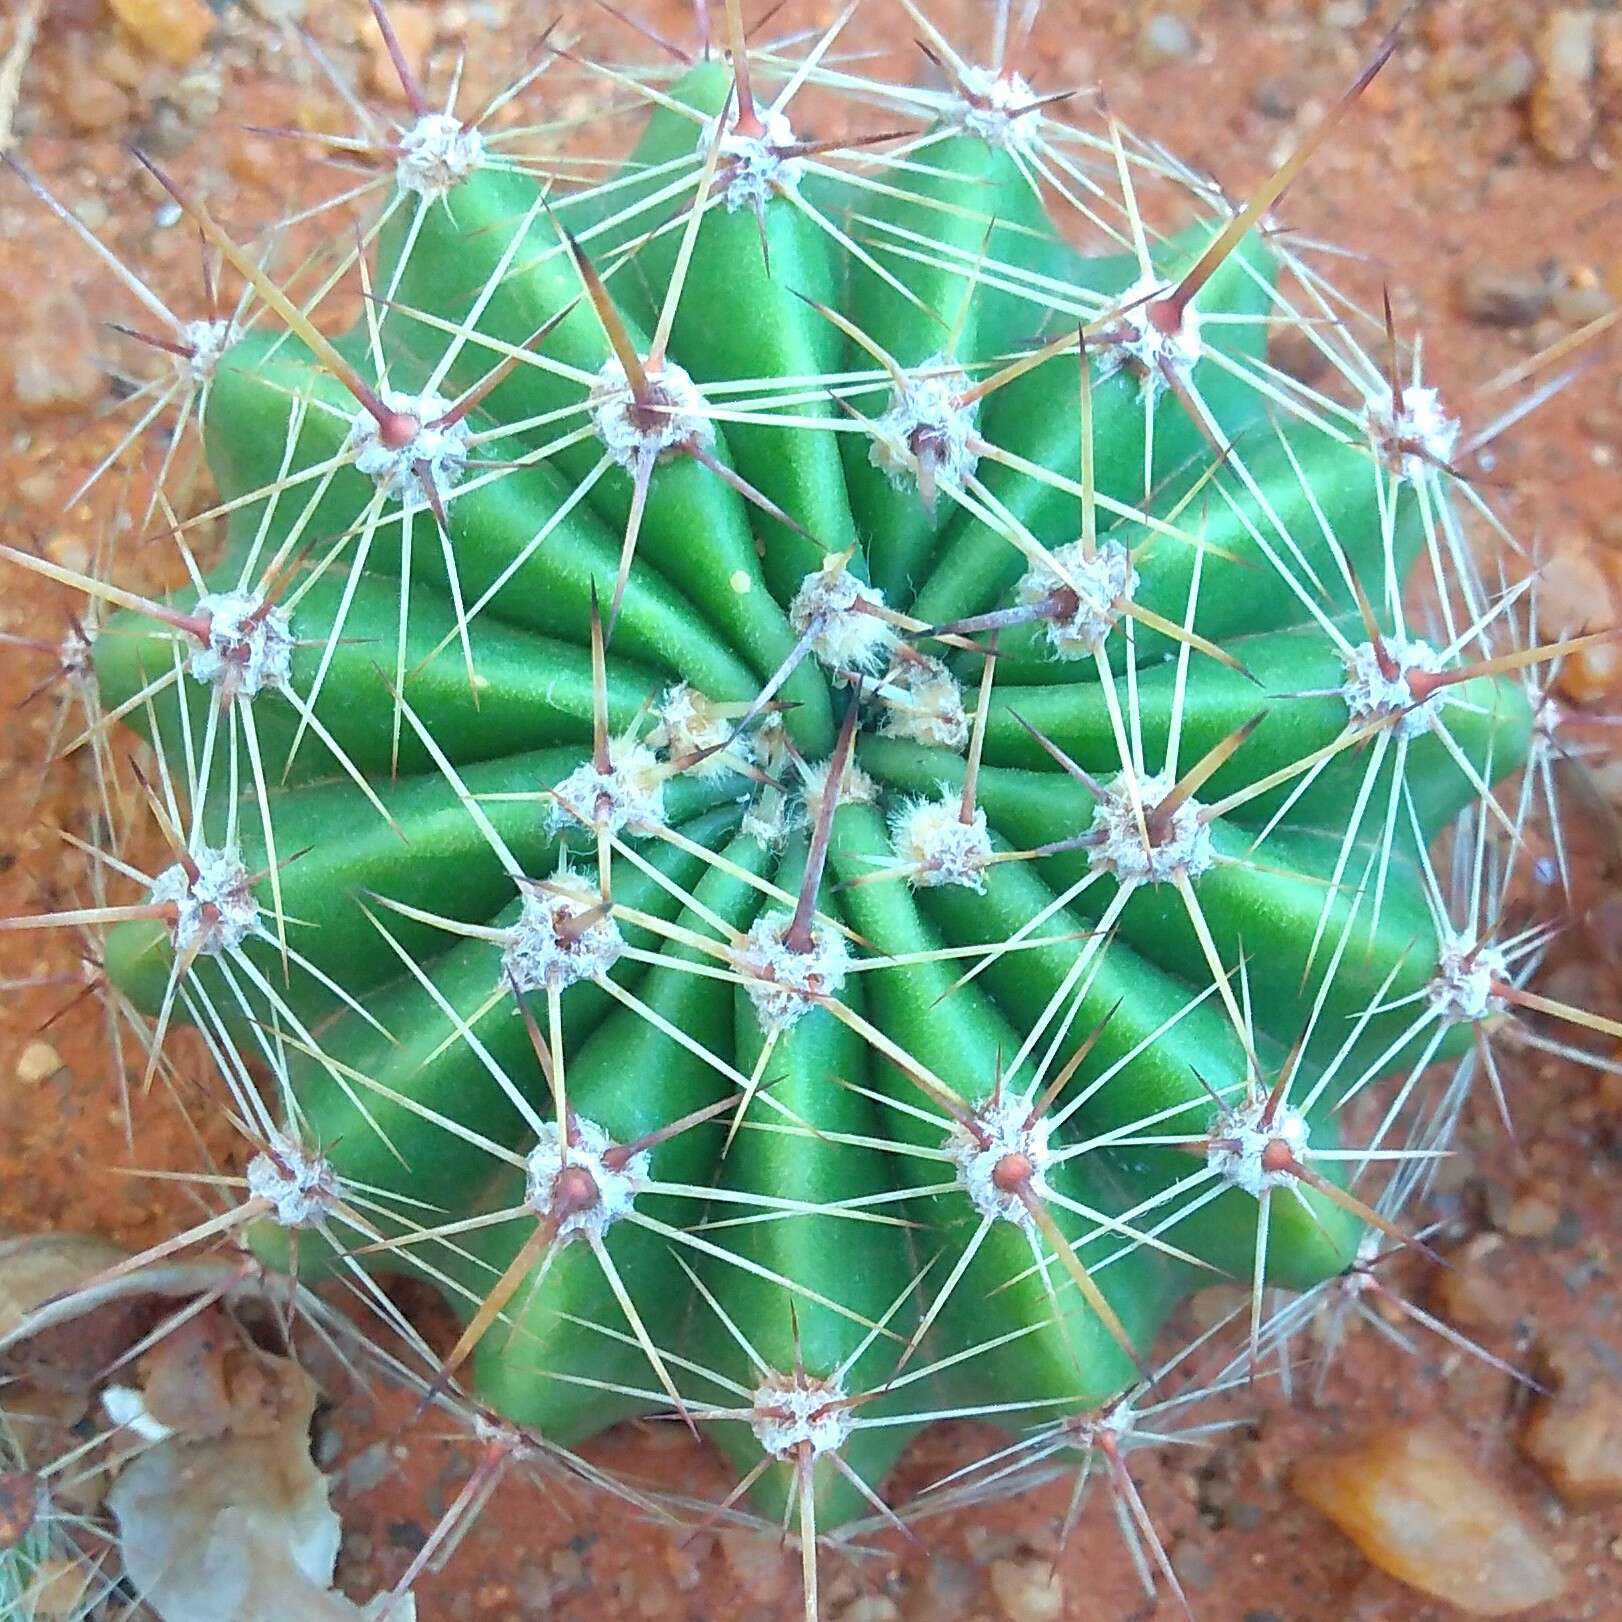 Image of Echinopsis oxygona